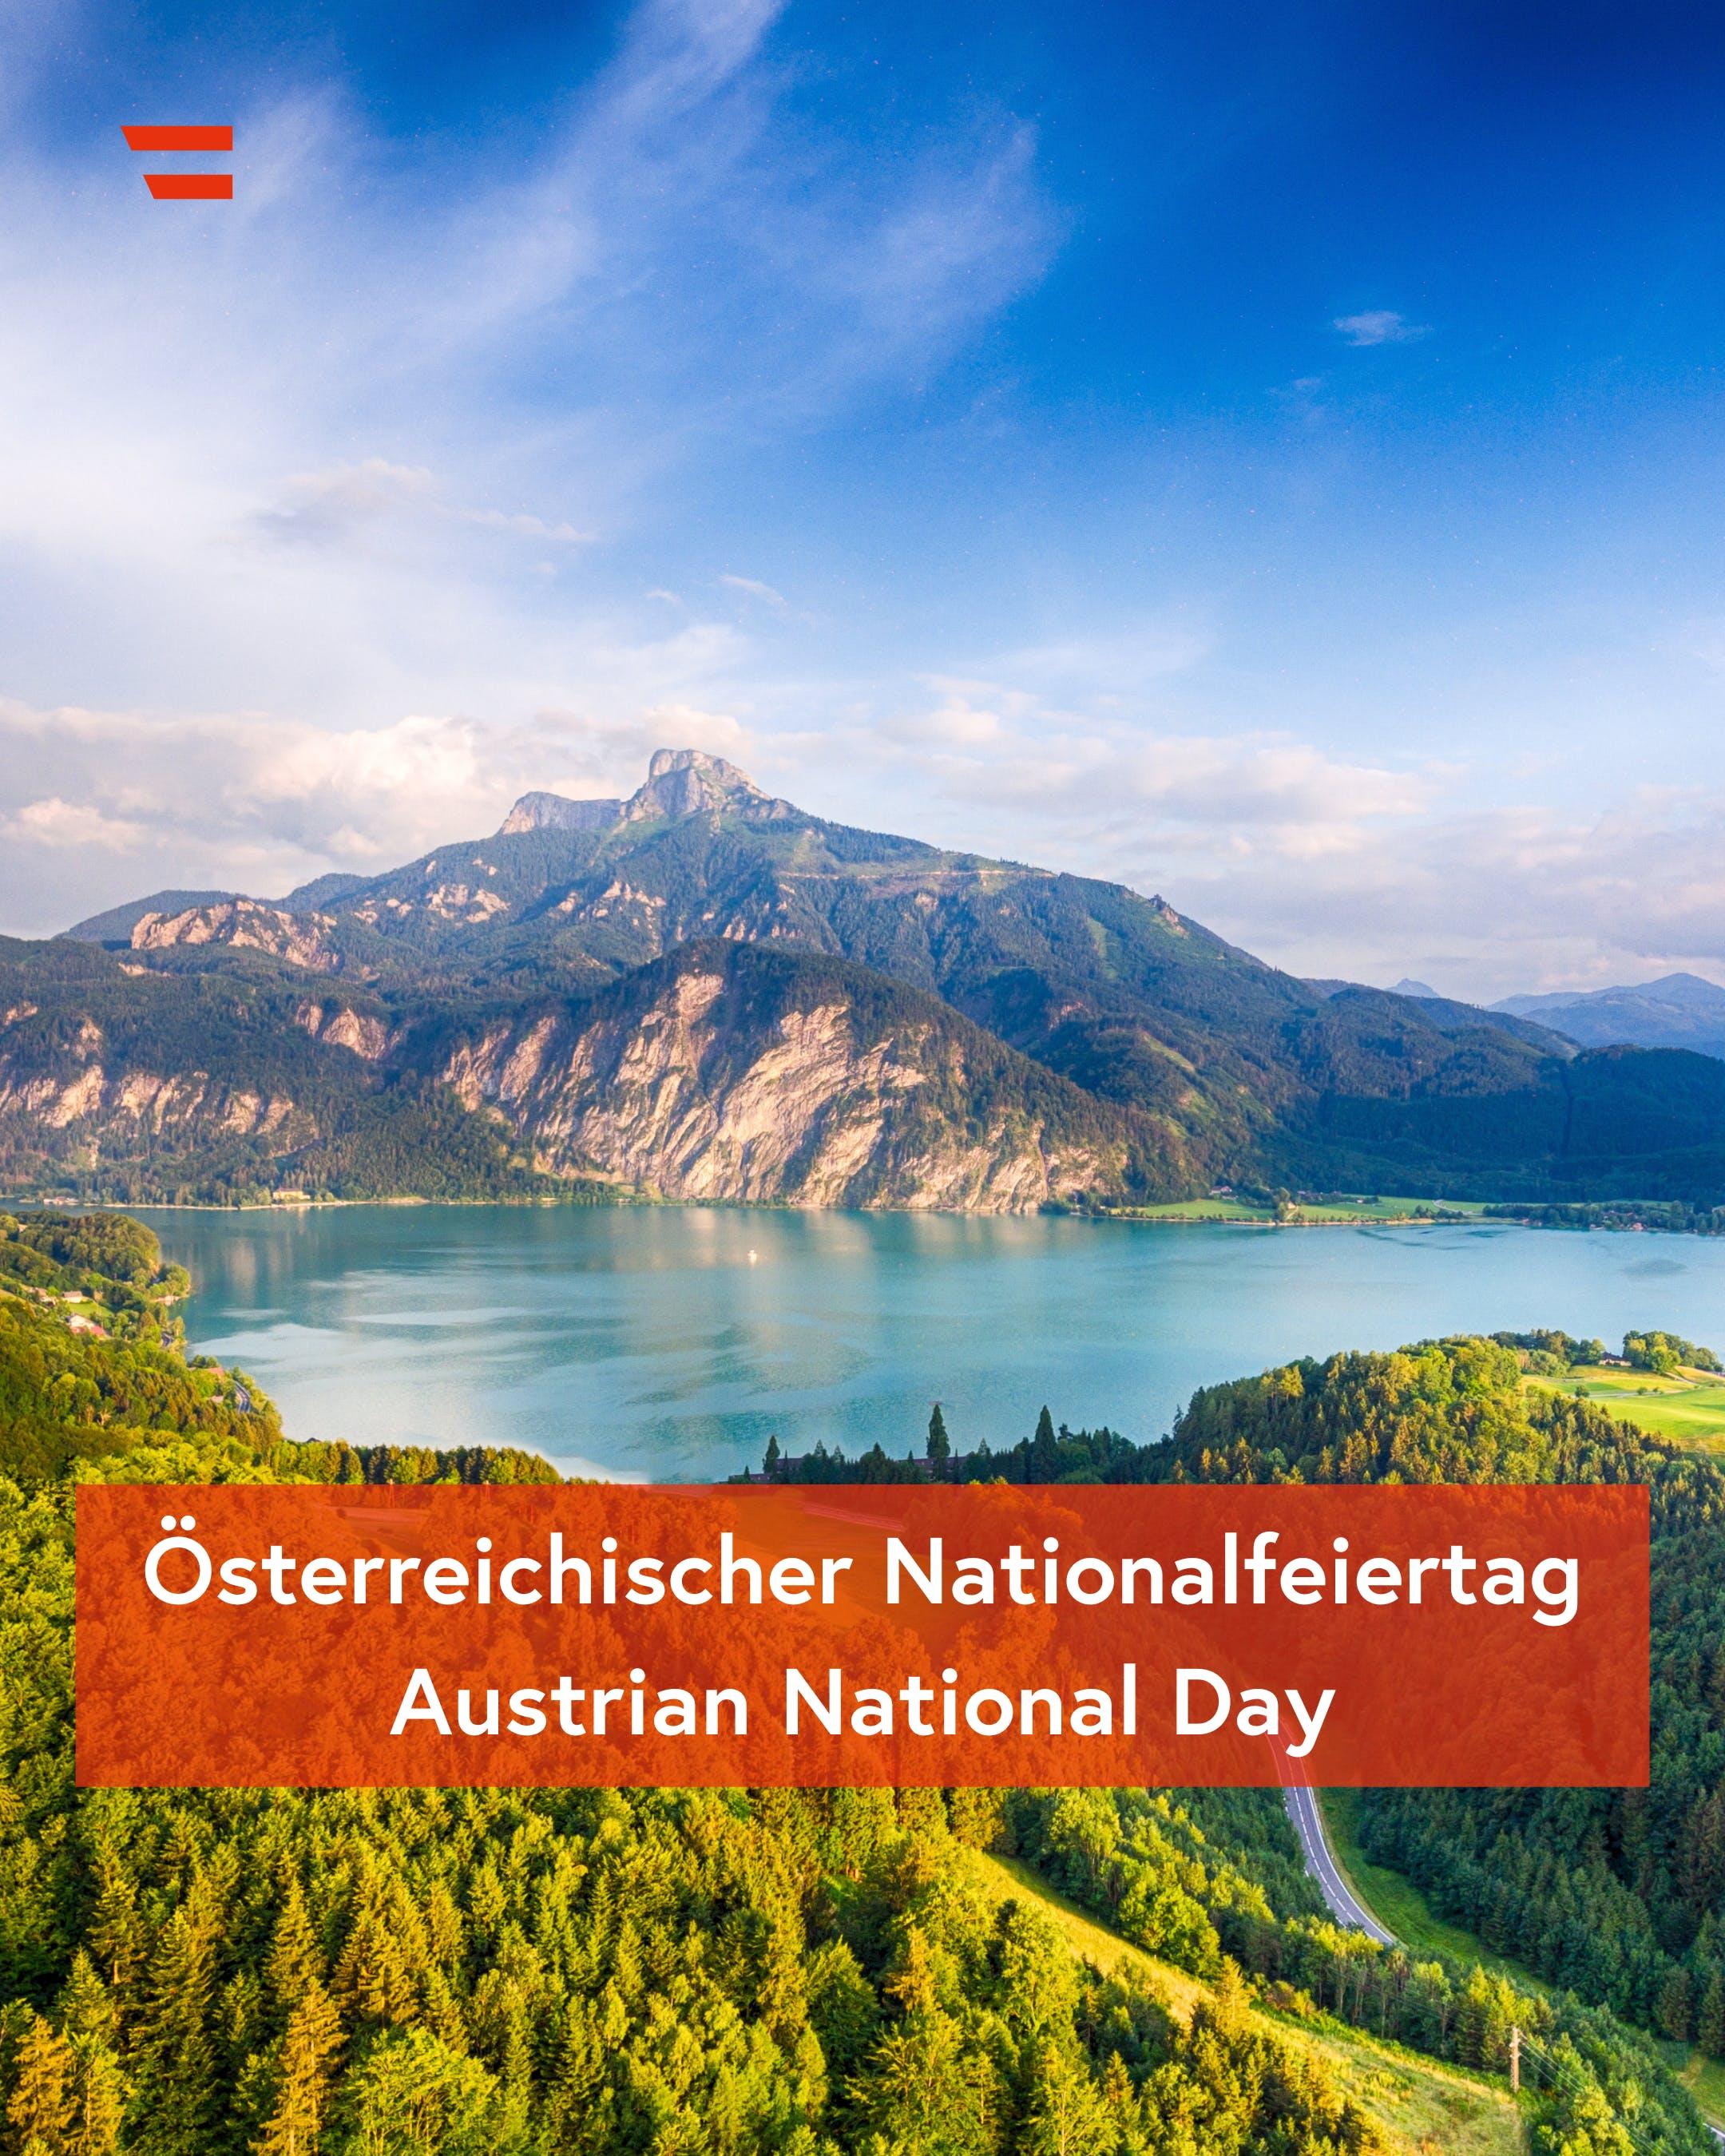 Национальный праздник Австрии, Изображение: Федеральное министерство европейских и международных дел Австрии